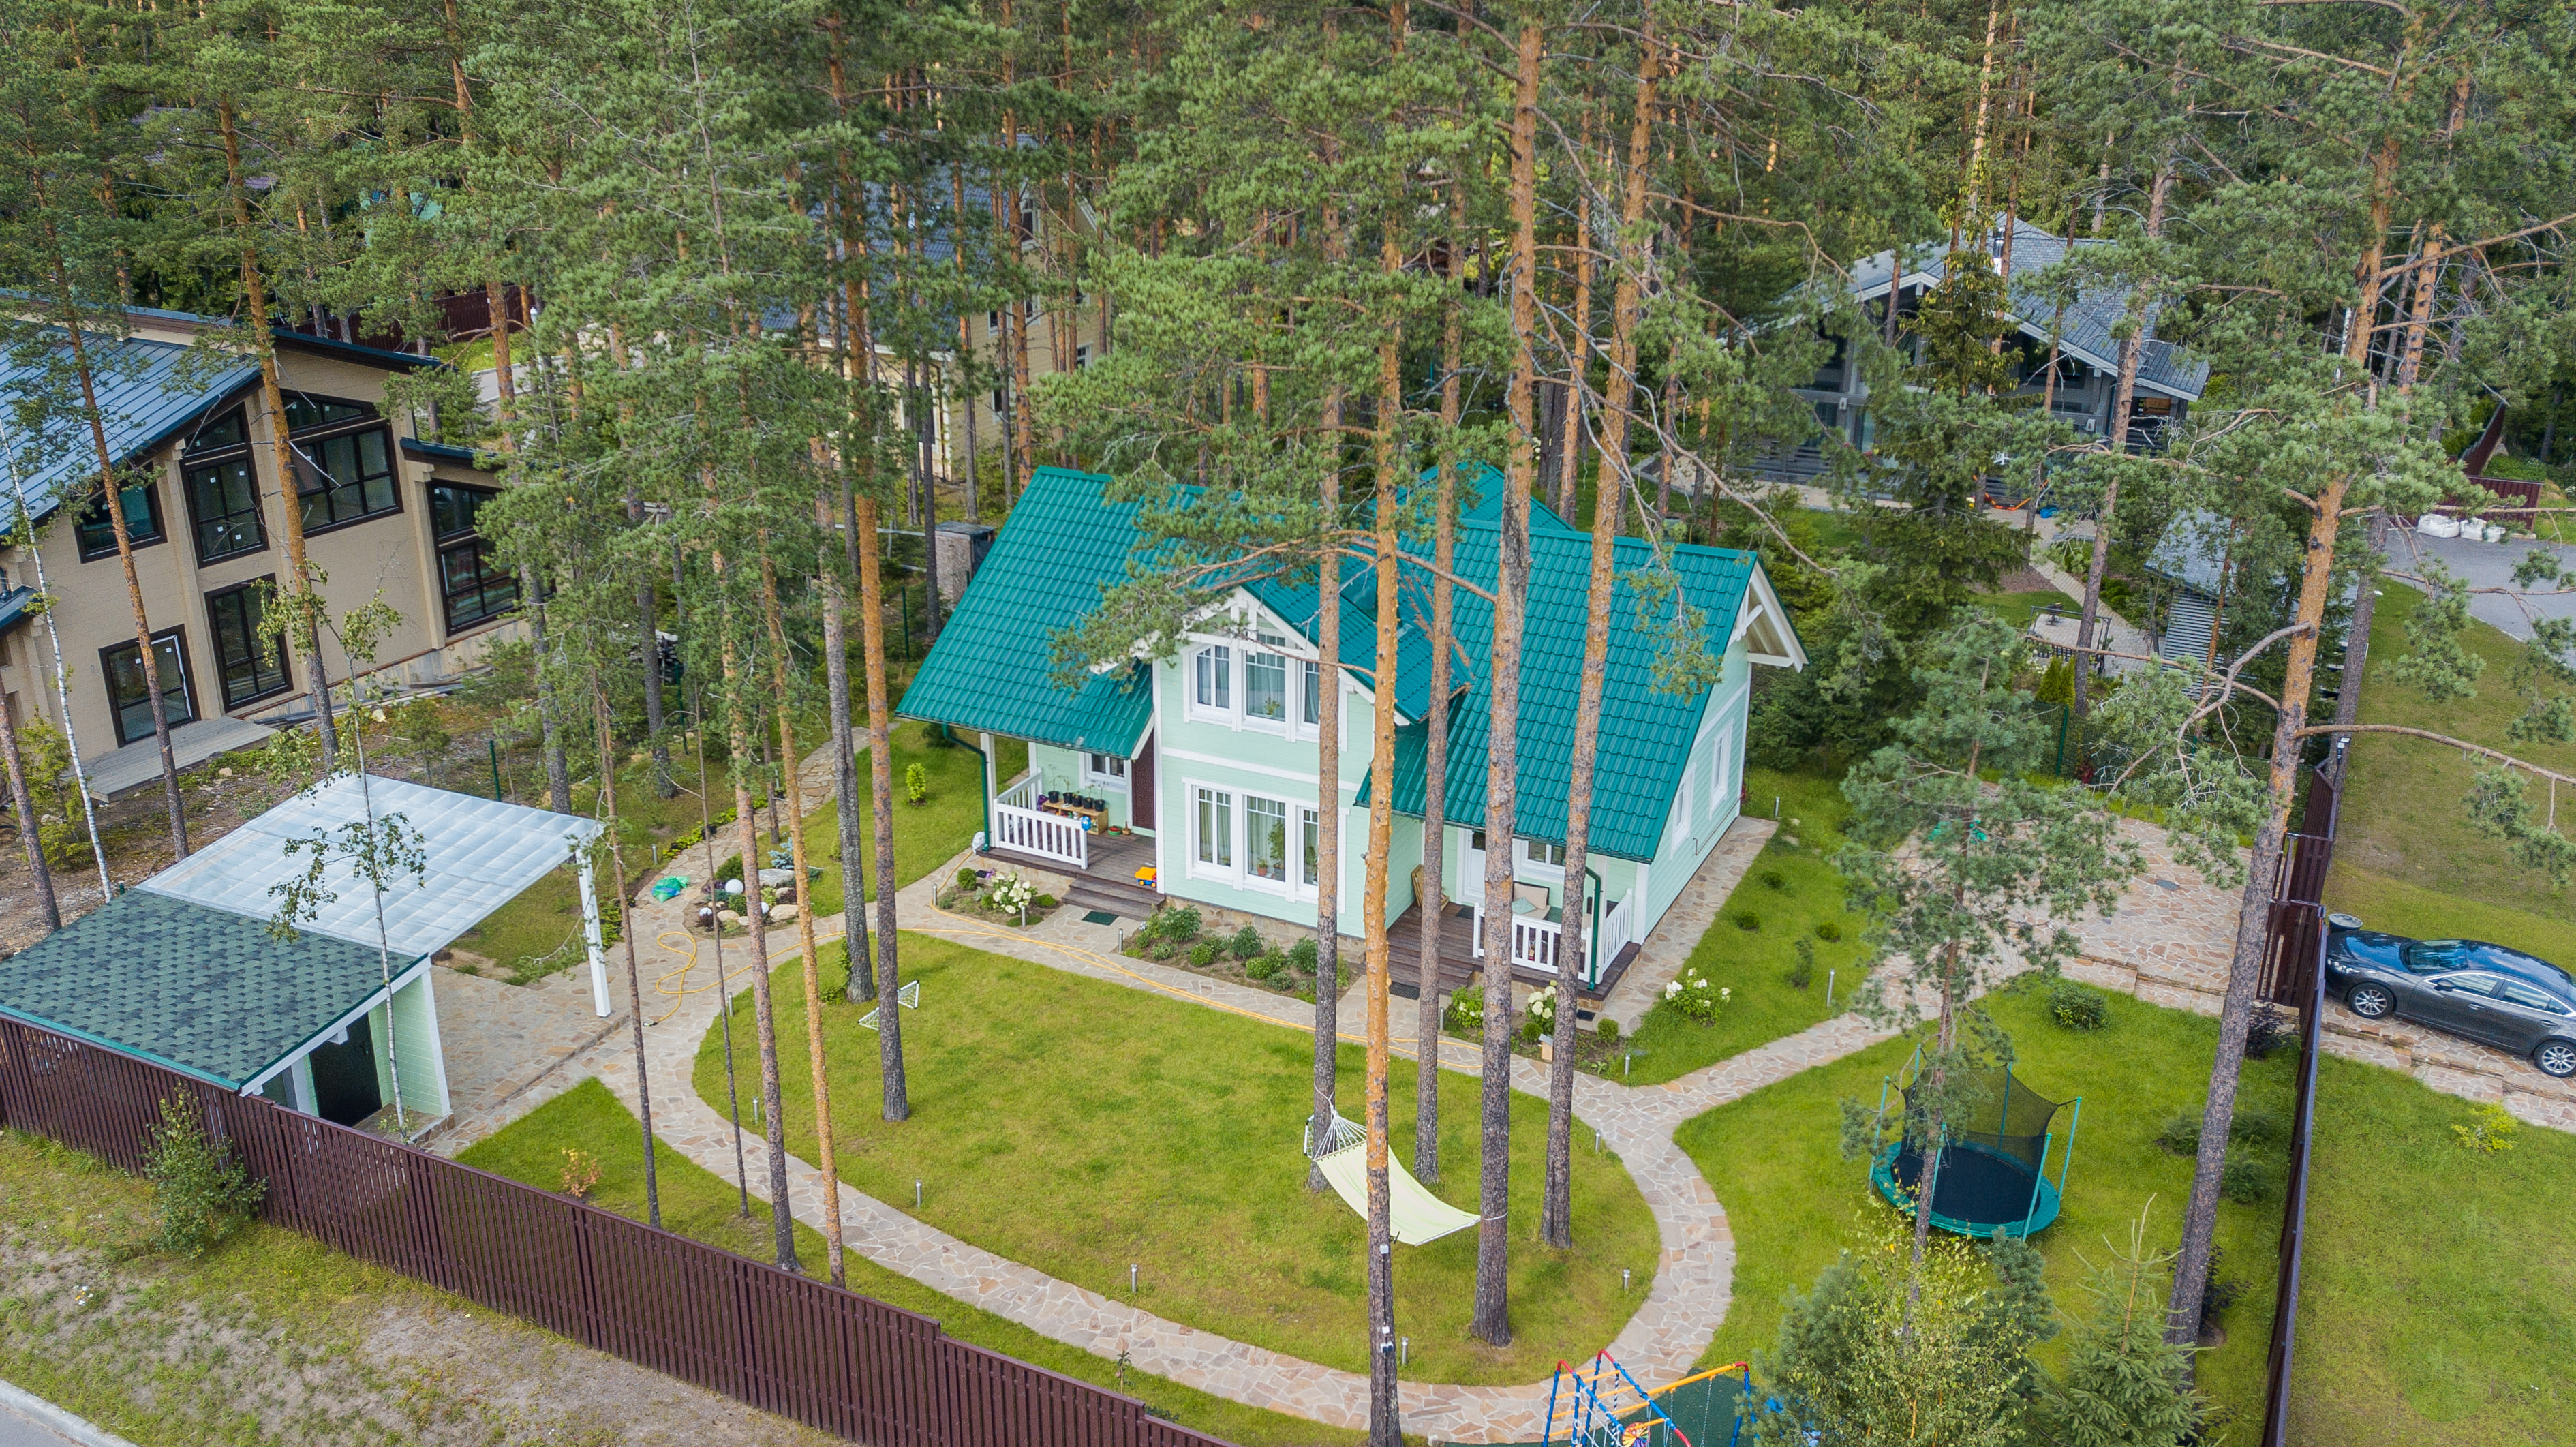 Строительство финских каркасных домов